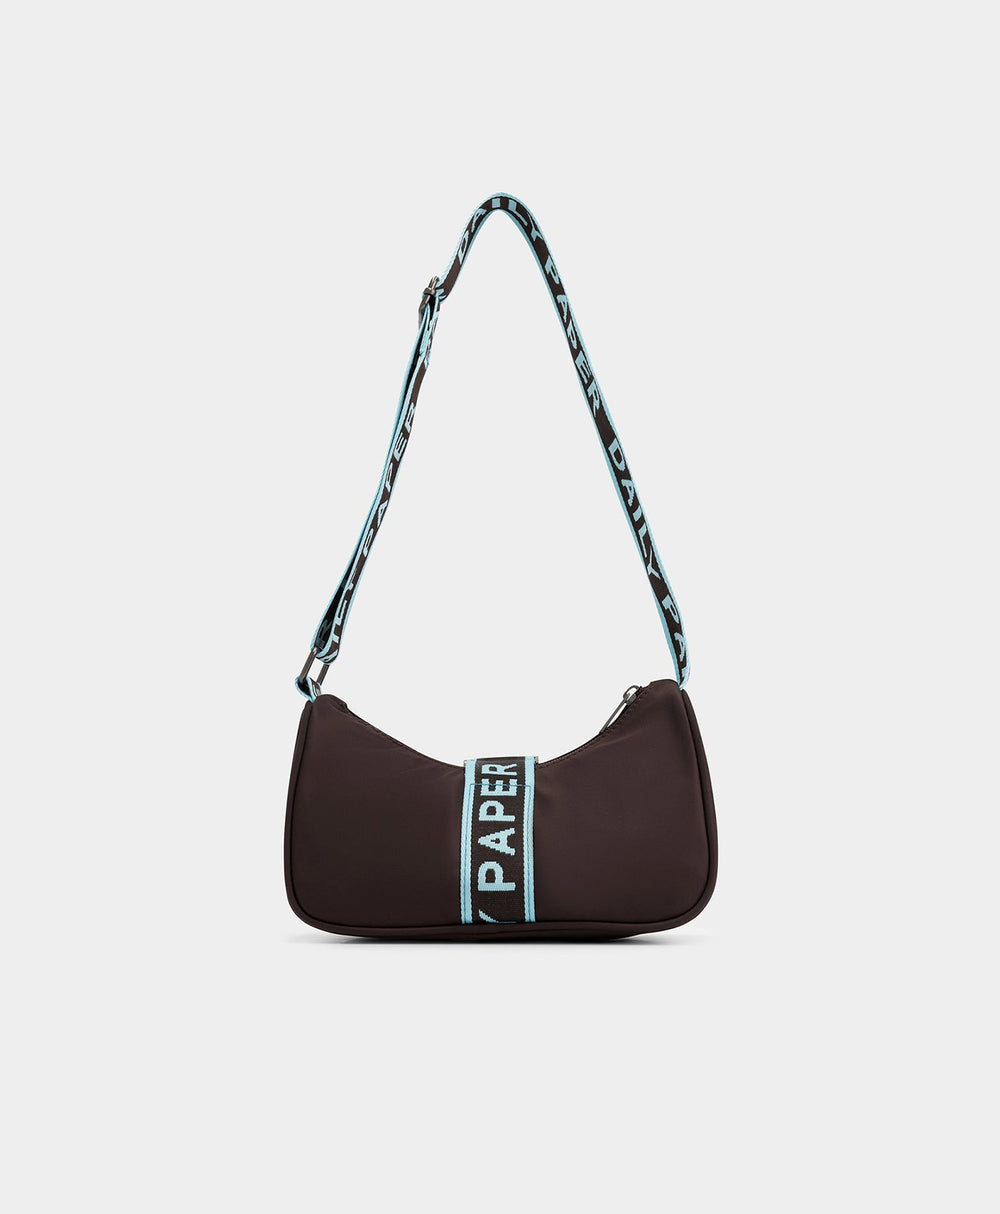 DP - Chocolate Brown Hona Bag - Packshot - Rear